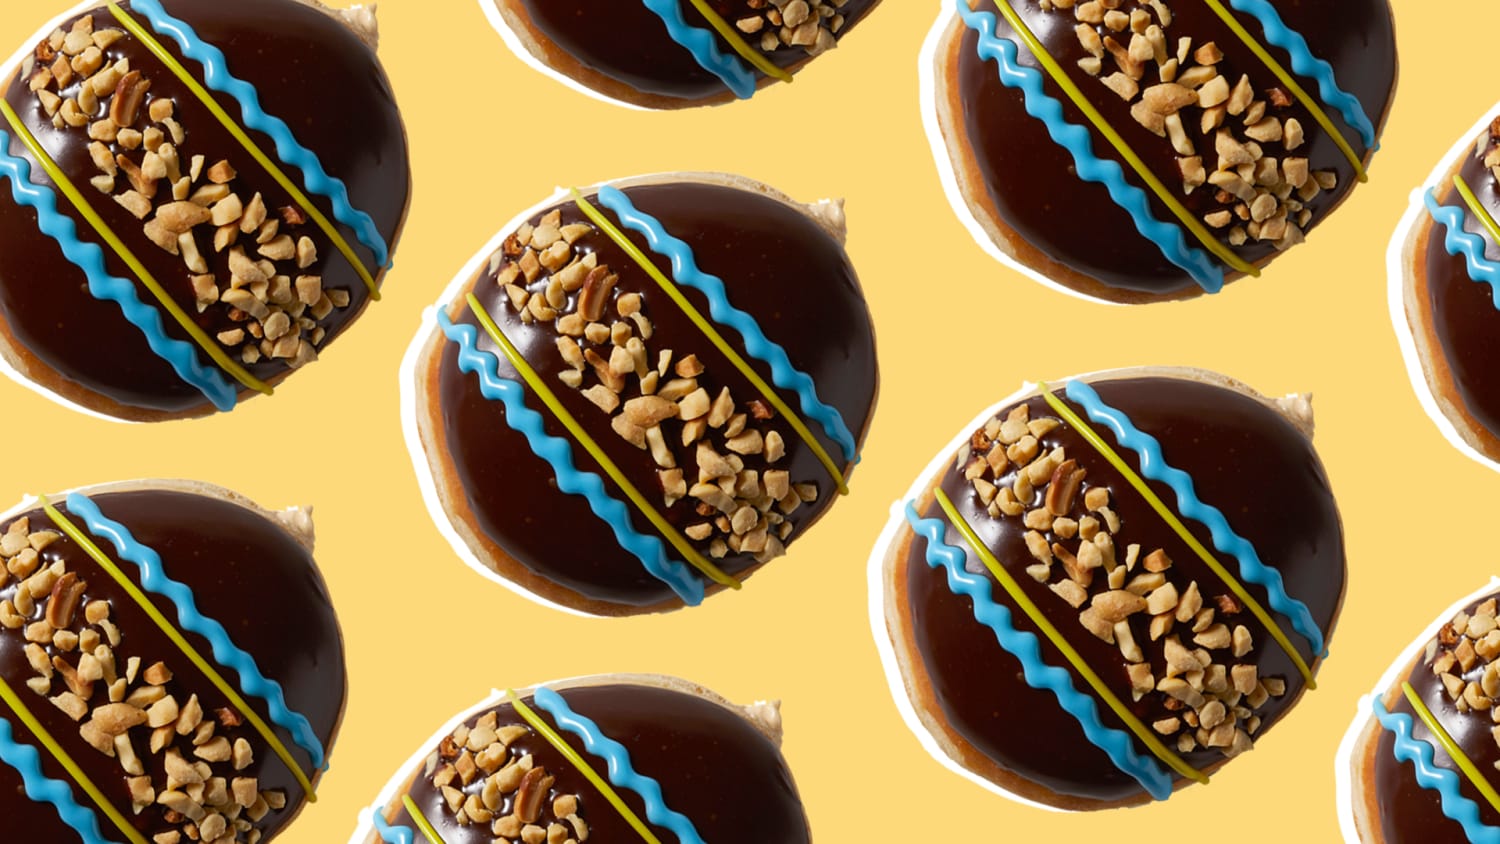 Krispy Kreme releases Reese's Peanut Butter Egg doughnut for Easter.